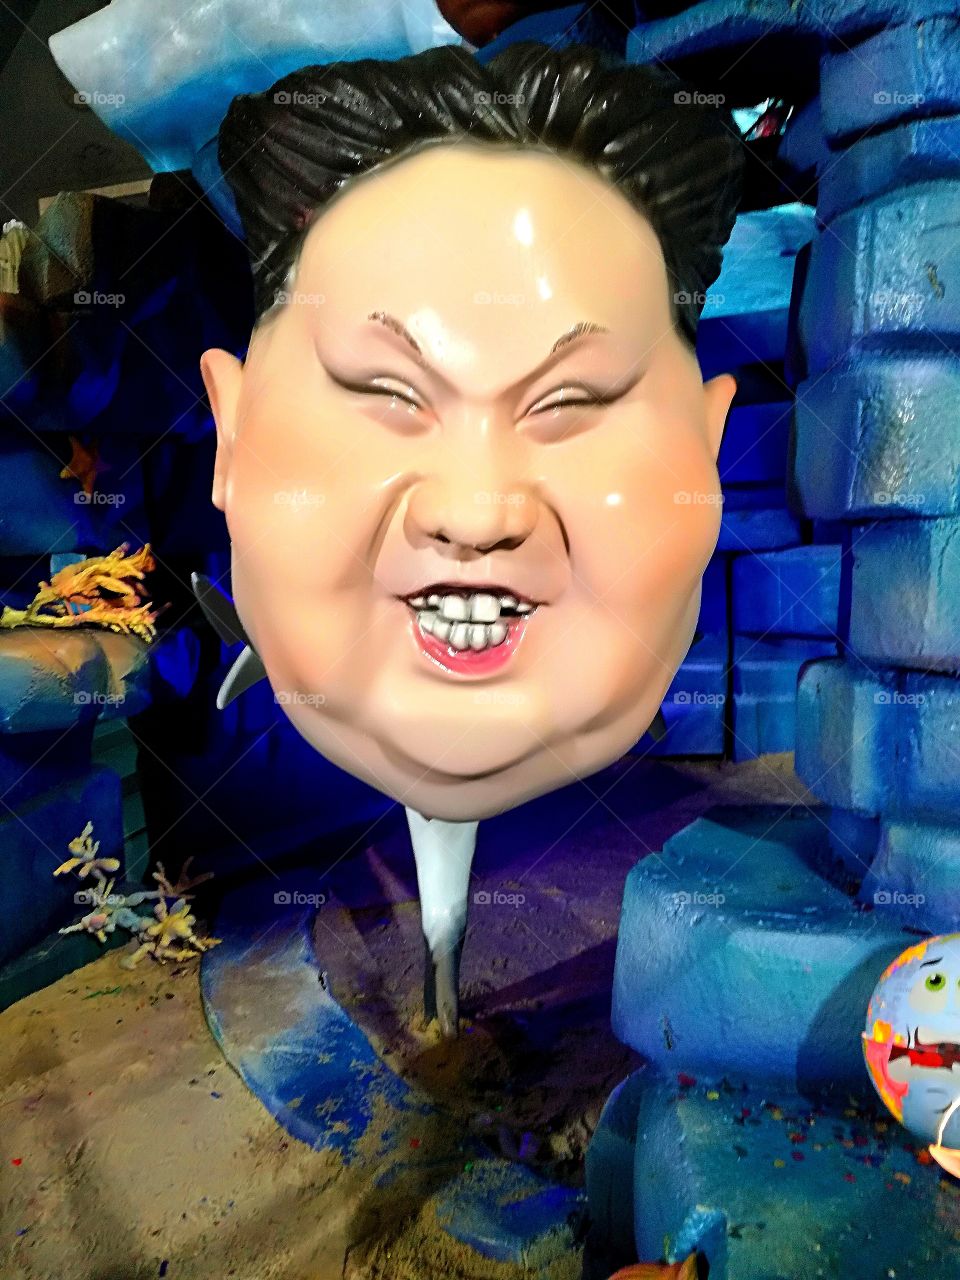 #kim jong un #art #picture #funny #entertainment #floap #smile #buy #voted #vote